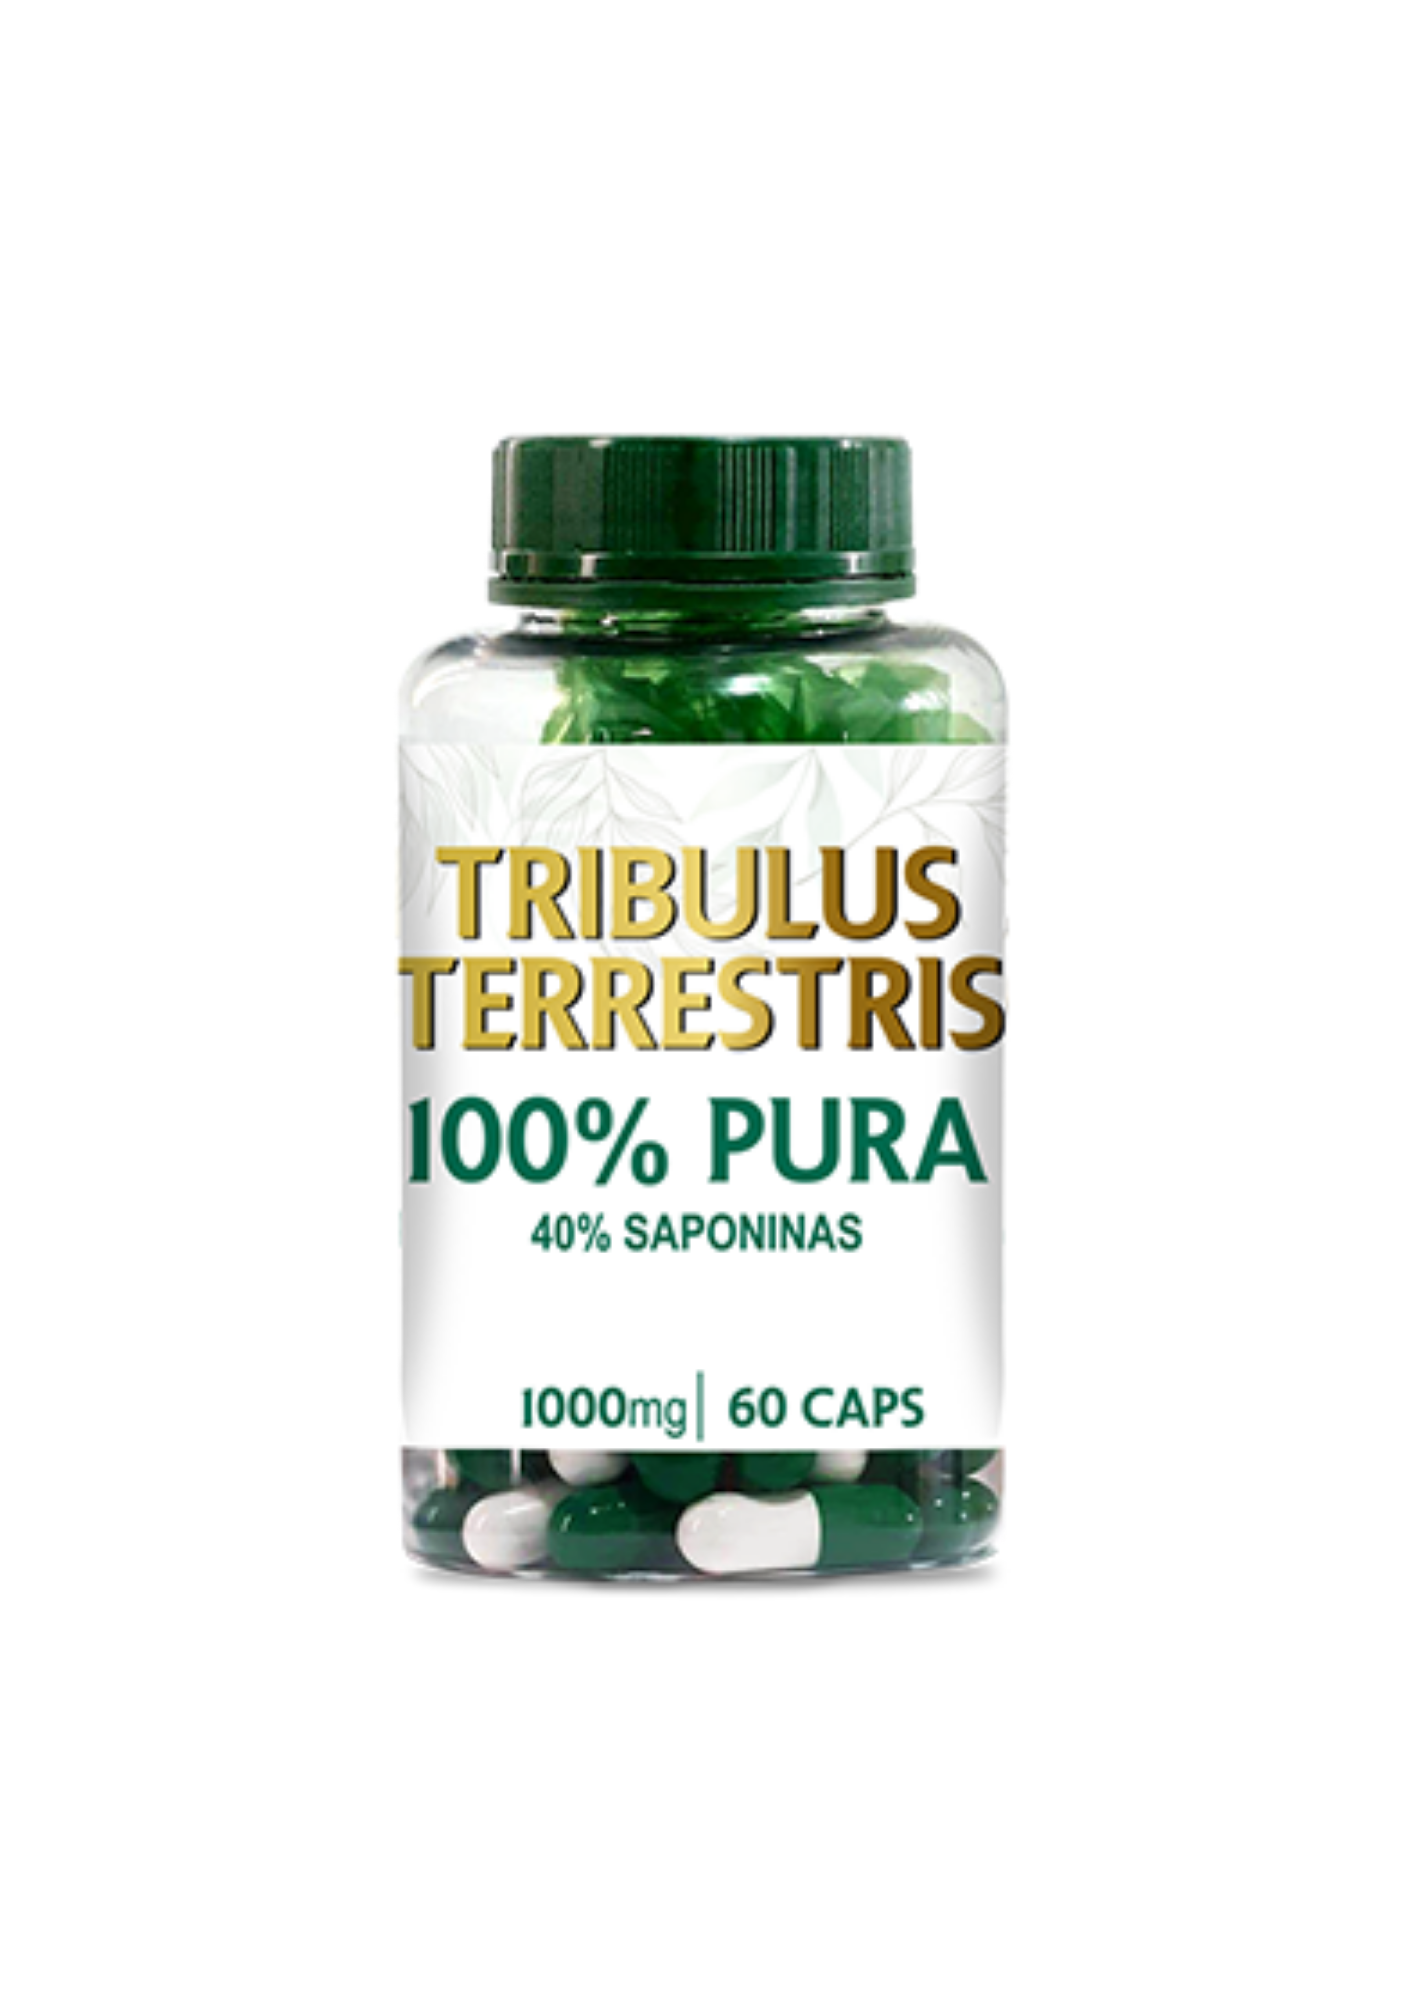 Extrato Puro de Tribulus Terrestris 1000mg<br>Linha de Cápsulas Fitoterápicas - R$ 47,25